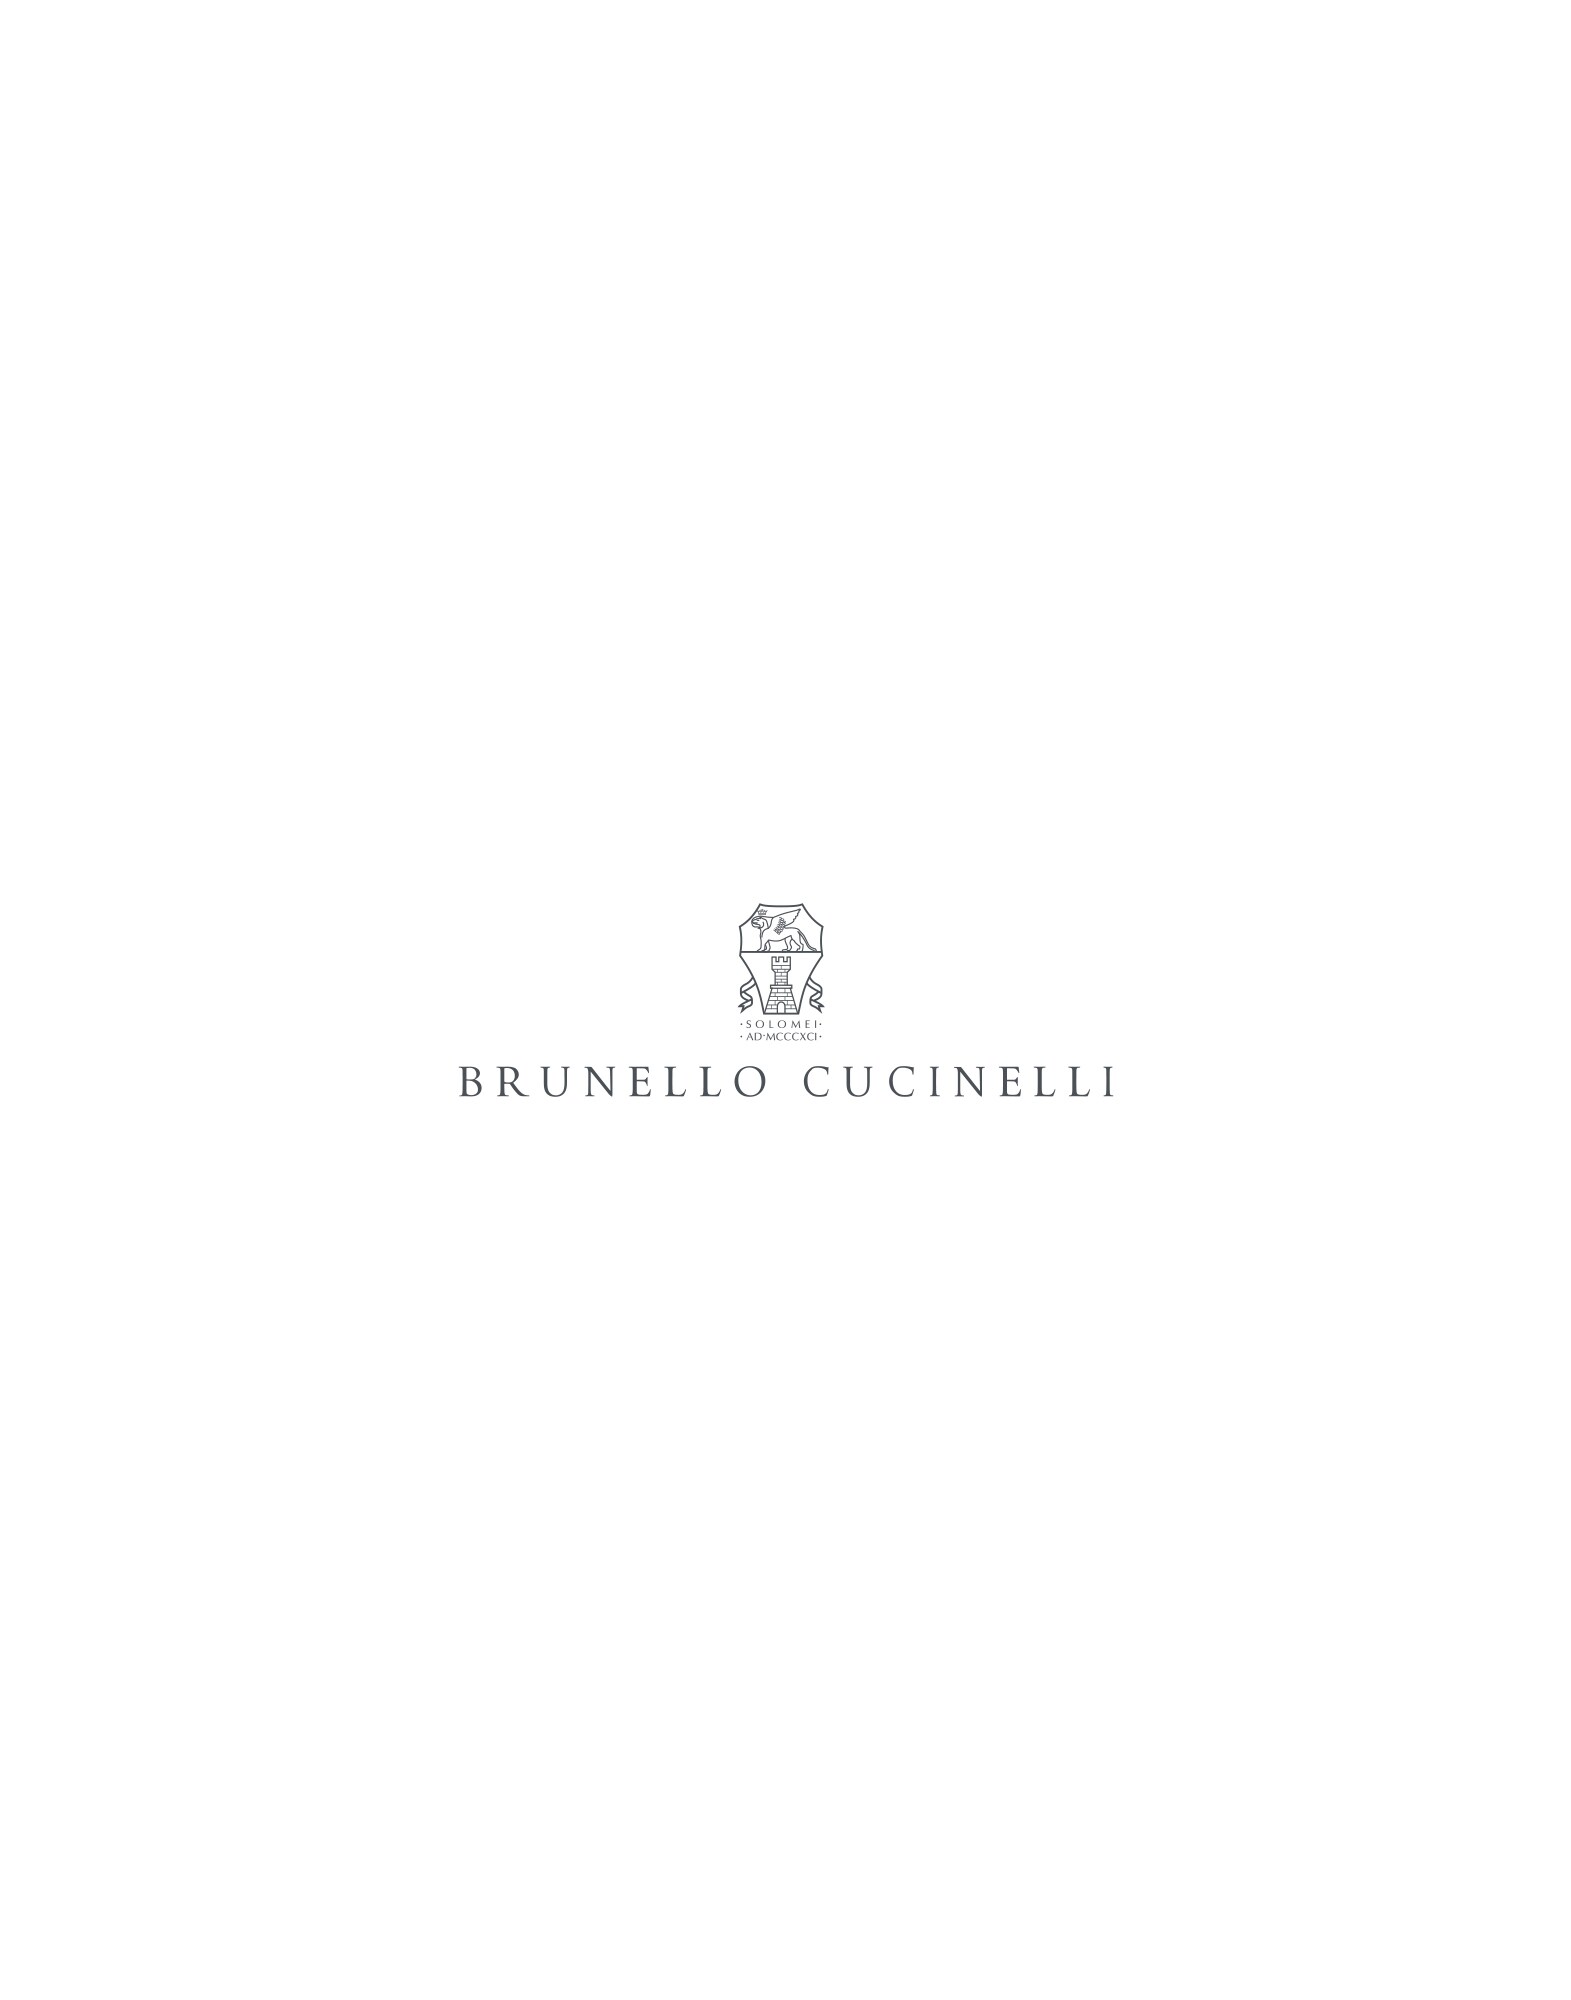 Plate set Milk Lifestyle -
                        Brunello Cucinelli
                    